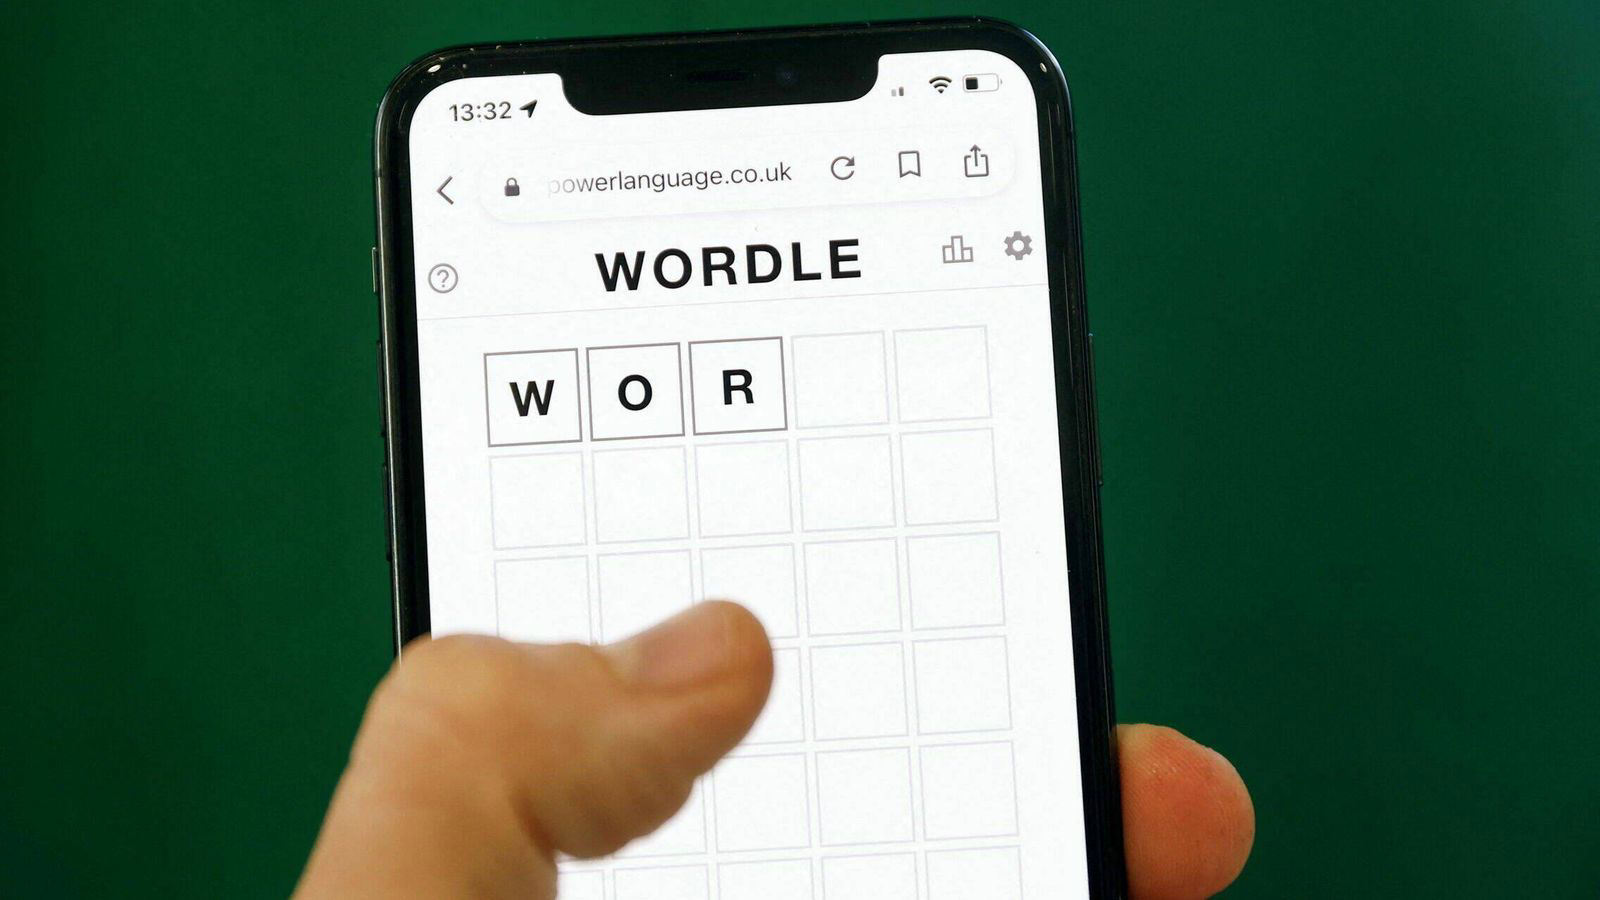 La solución y pistas de la palabra de Wordle de hoy, 2 de julio